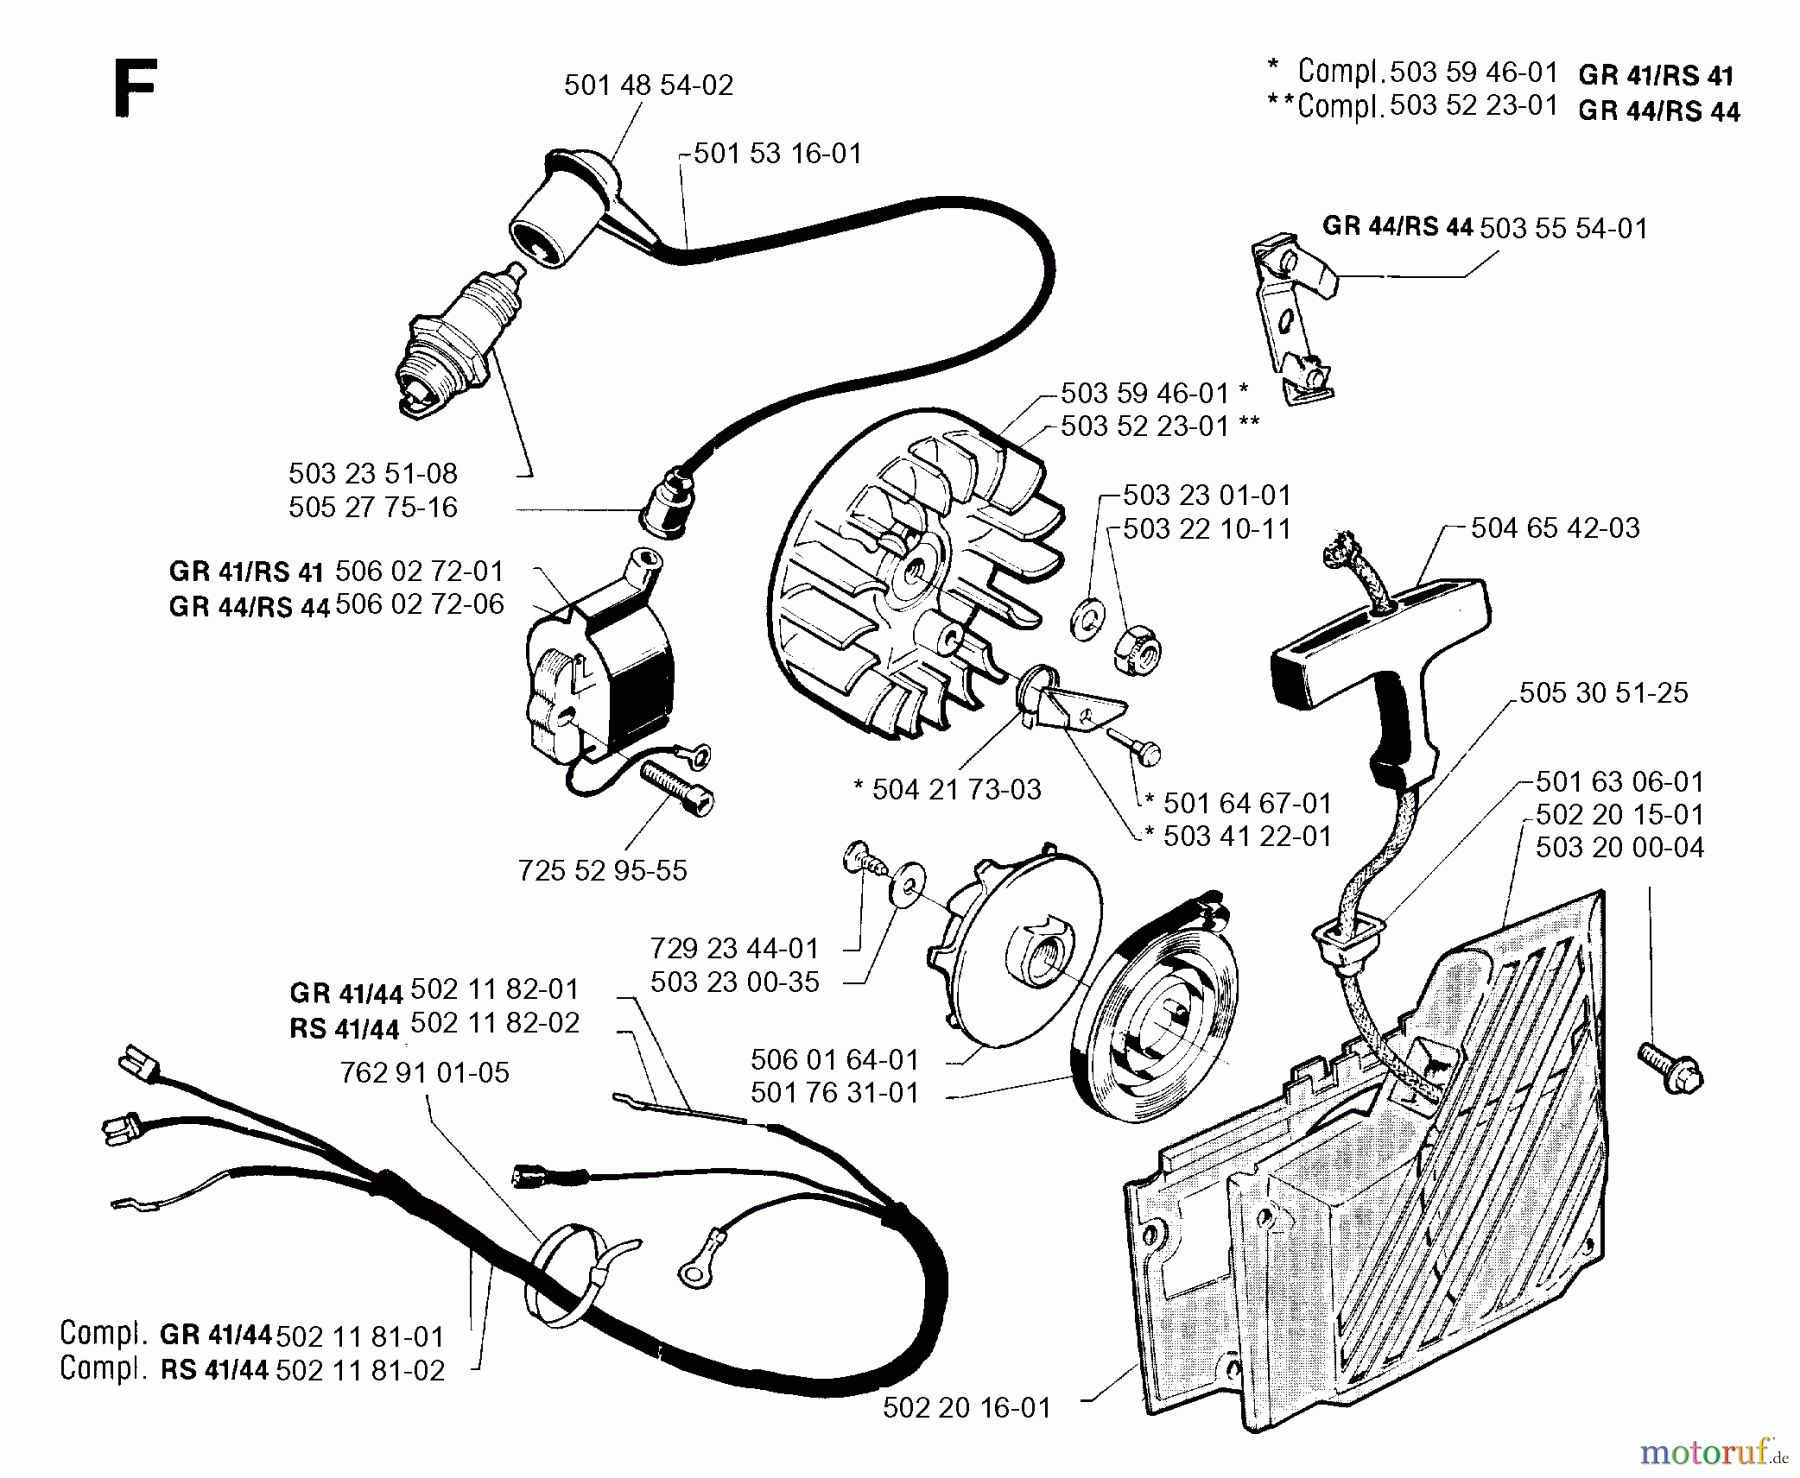  Jonsered Motorsensen, Trimmer RS41 - Jonsered String/Brush Trimmer (1992-09) STARTER